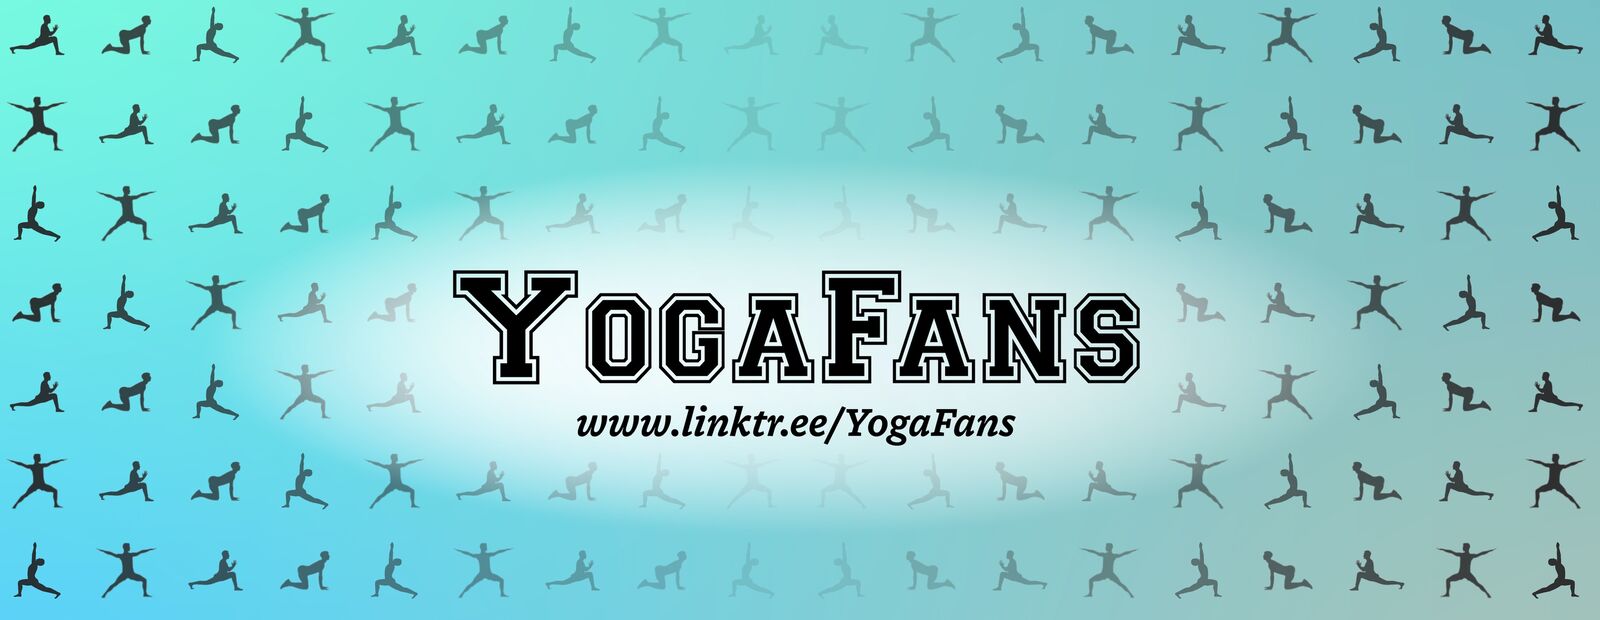 yoga_fans